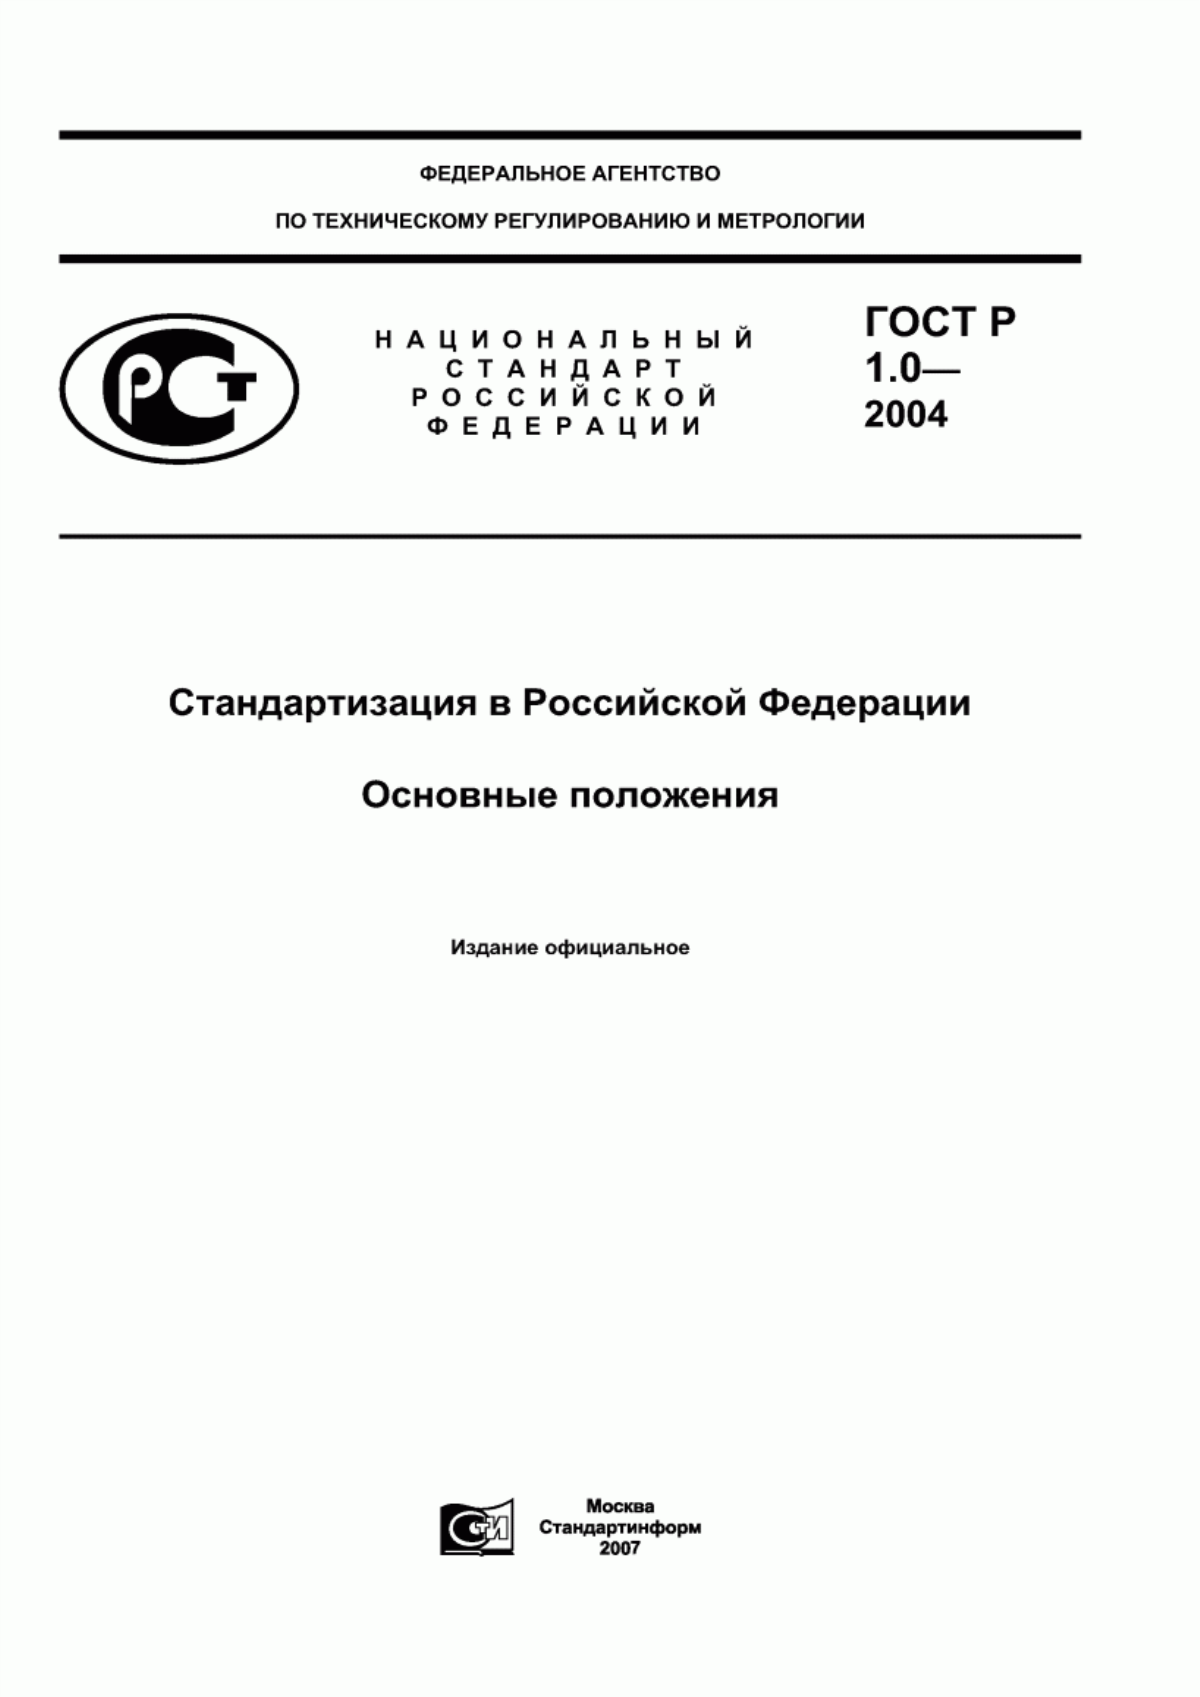 ГОСТ 1.0-2004 стандартизация в Российской Федерации. ГОСТ Р 1.0-2004 стандартизация в Российской Федерации основные положения. ГОСТ Р 1.0-2012 стандартизация в Российской Федерации. ГОСТ Р 1.0-2004 3..